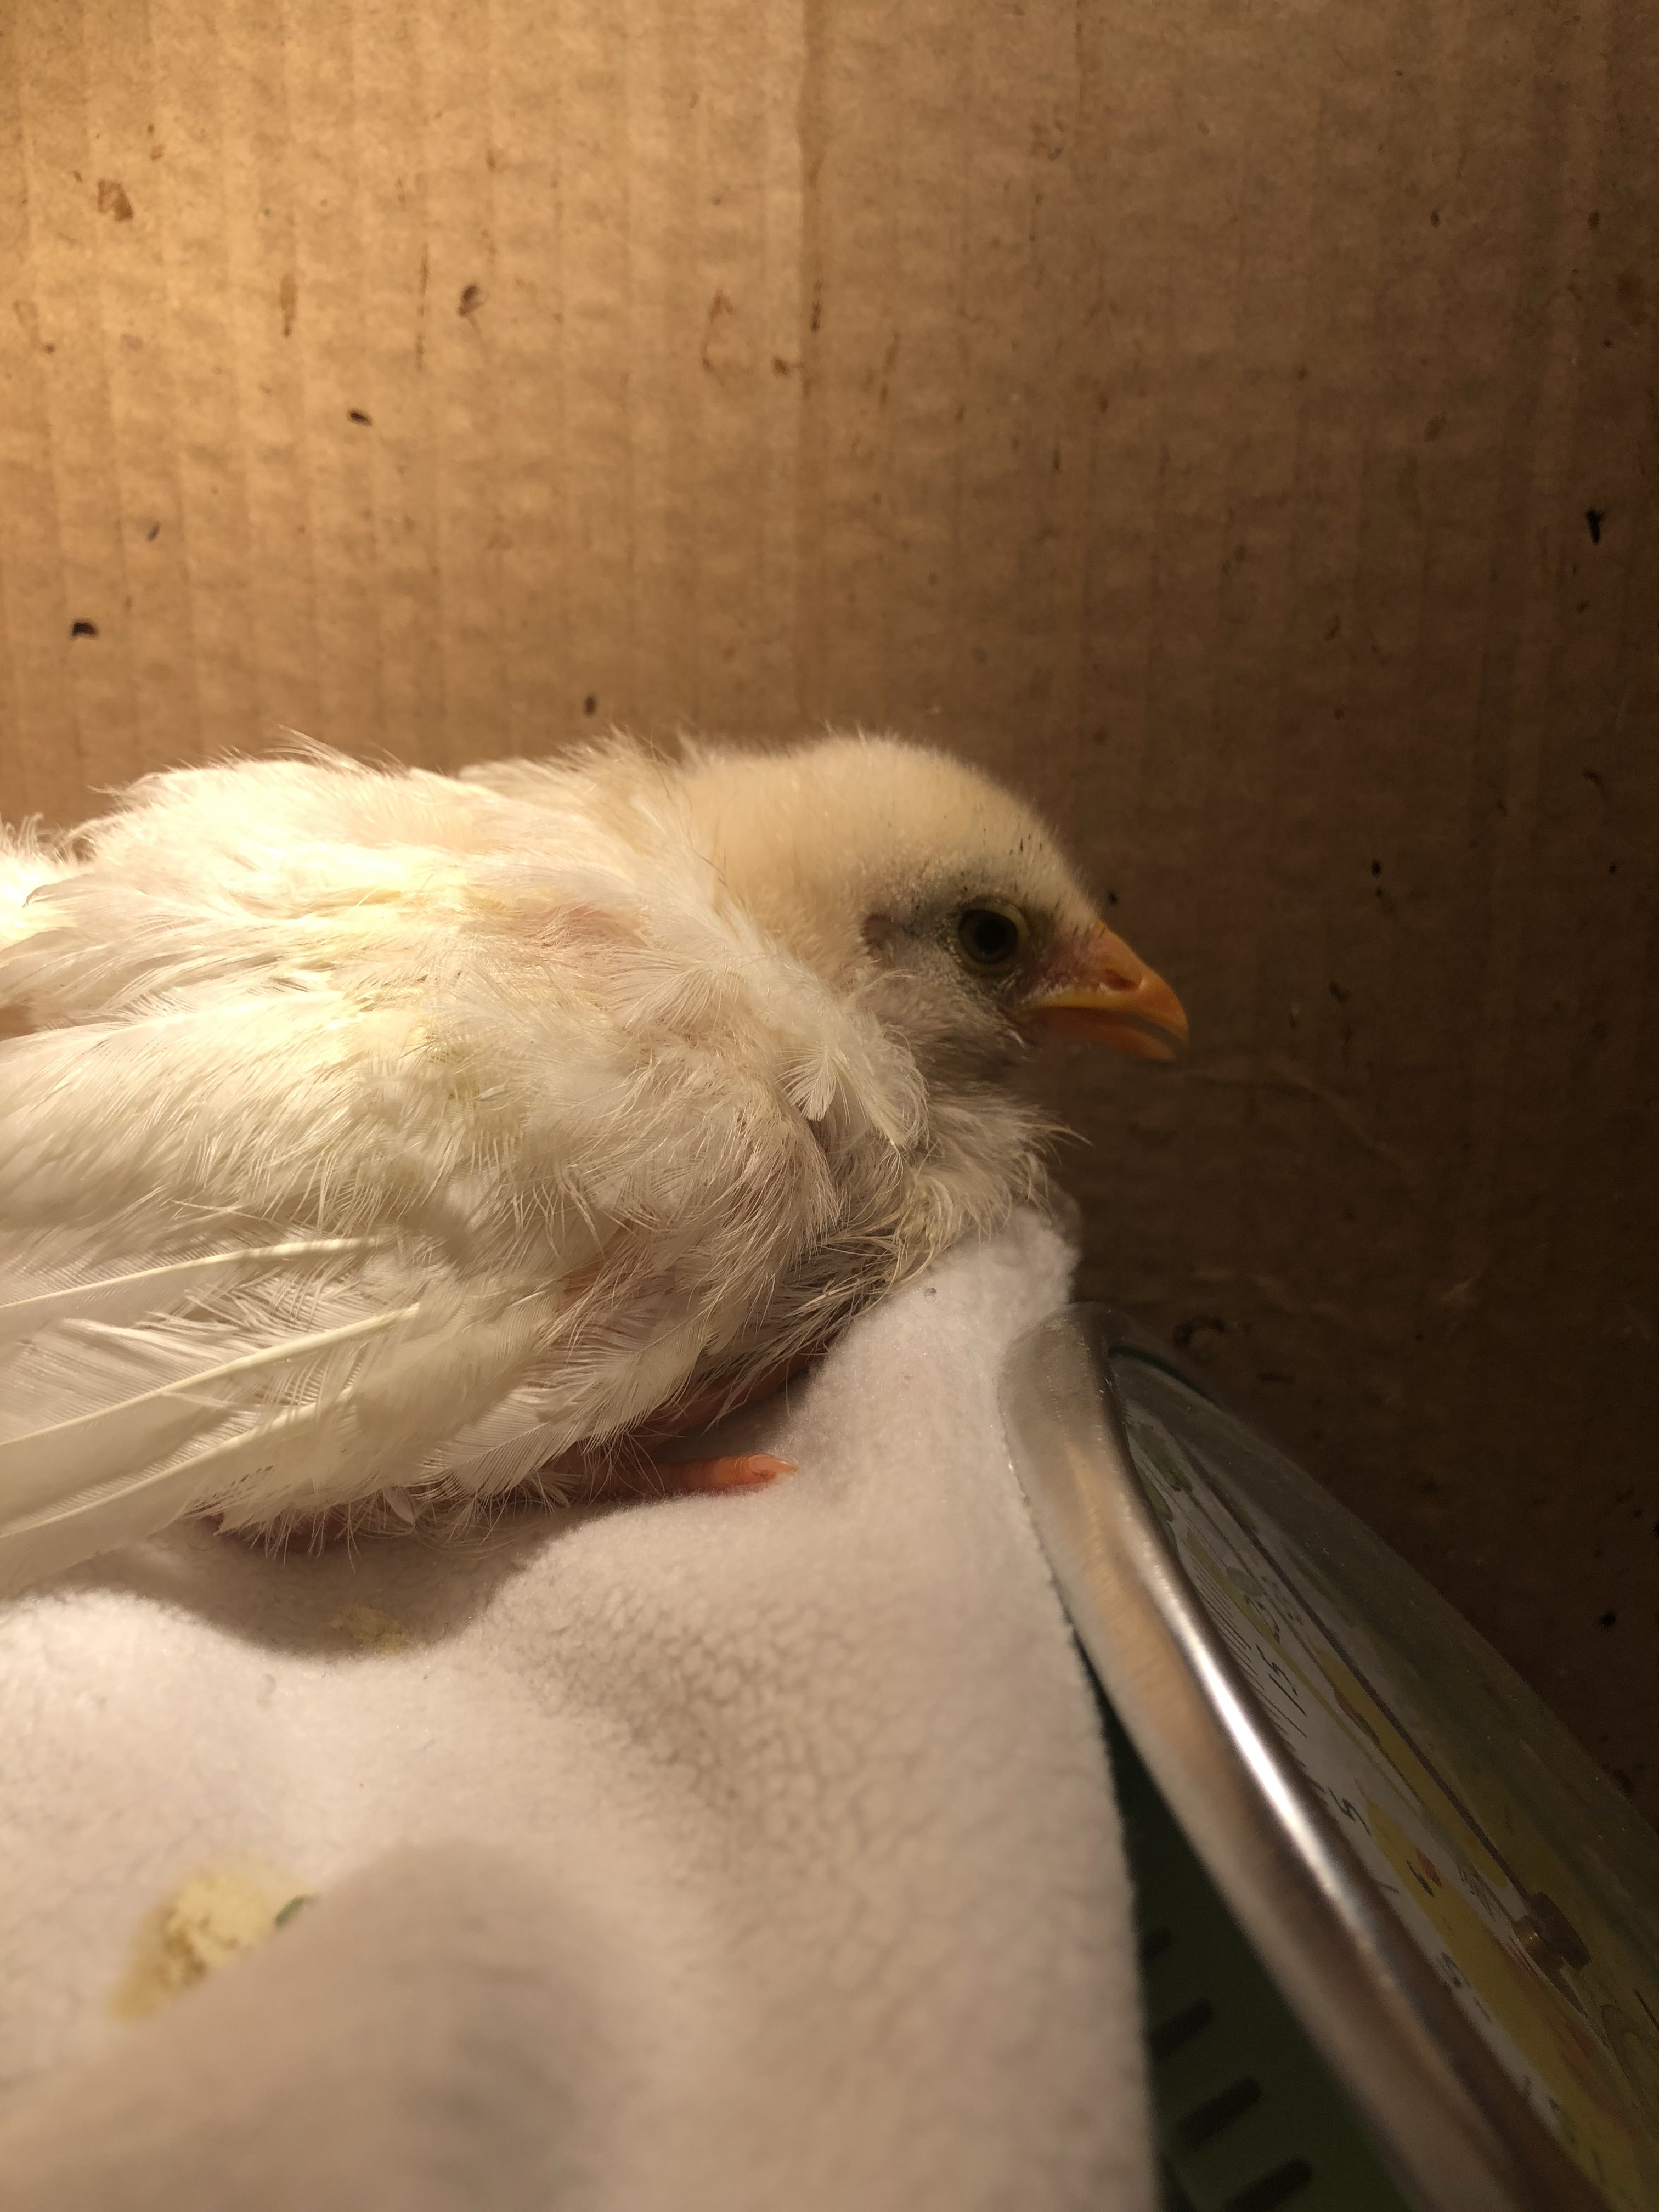 一个月大的小鸡好像感冒生病了张着嘴呼吸精神不济翅膀耷拉着不走动也